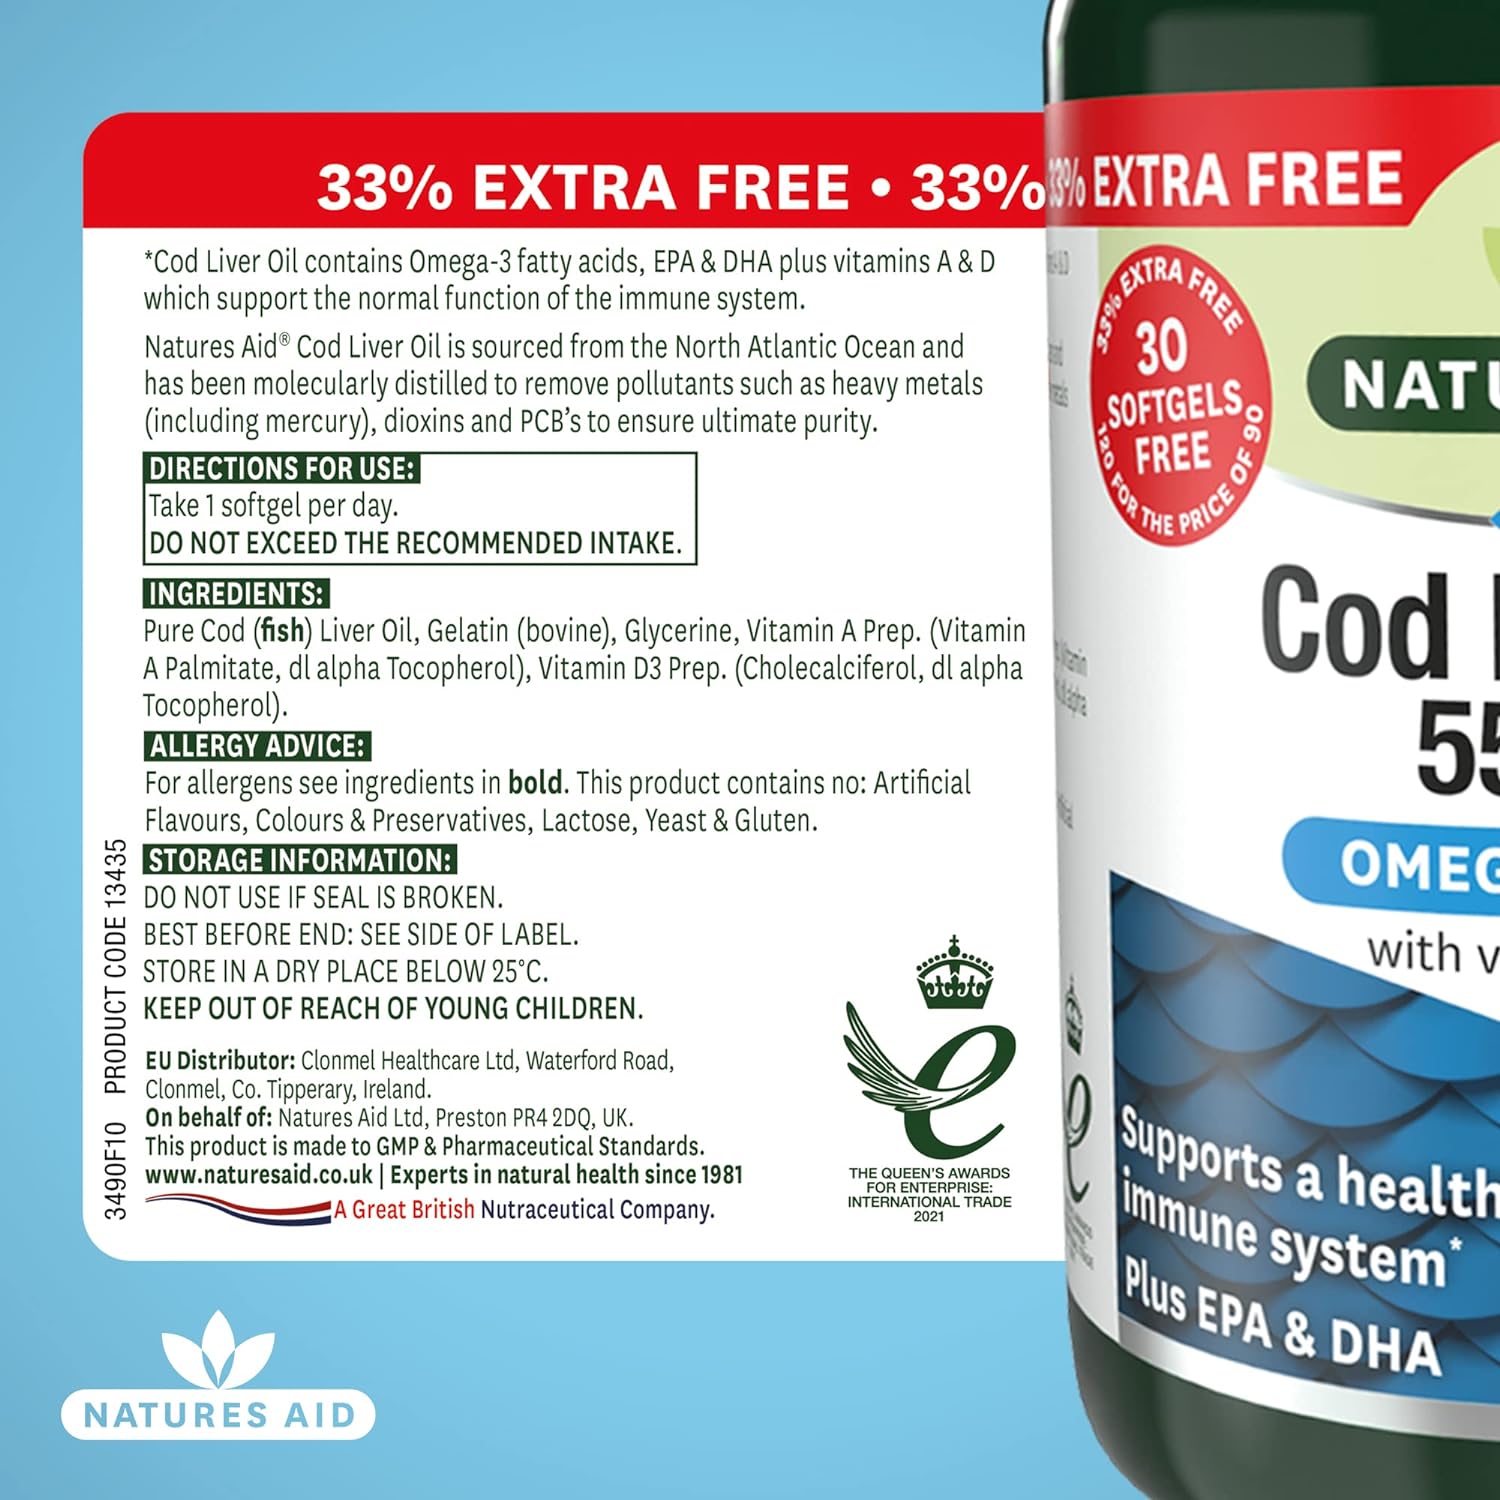 Omega-3 Cod Liver Oil 550mg 120 Softgels